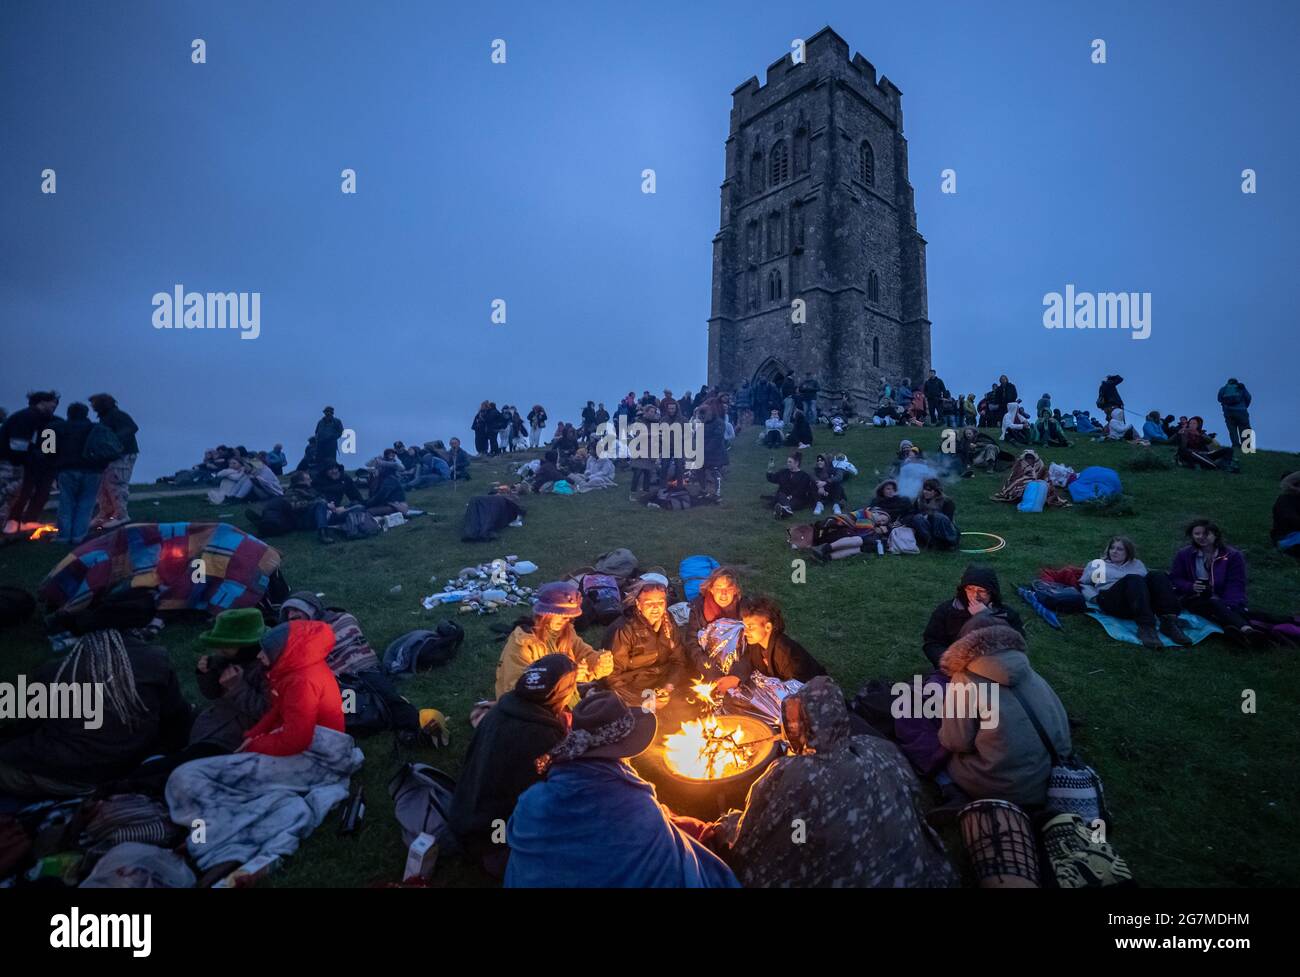 Célébration du solstice d'été sur Glastonbury Tor avec des fêtards se réunissant pour accueillir l'arrivée de l'été et la journée la plus longue de l'année. Somerset, Royaume-Uni Banque D'Images